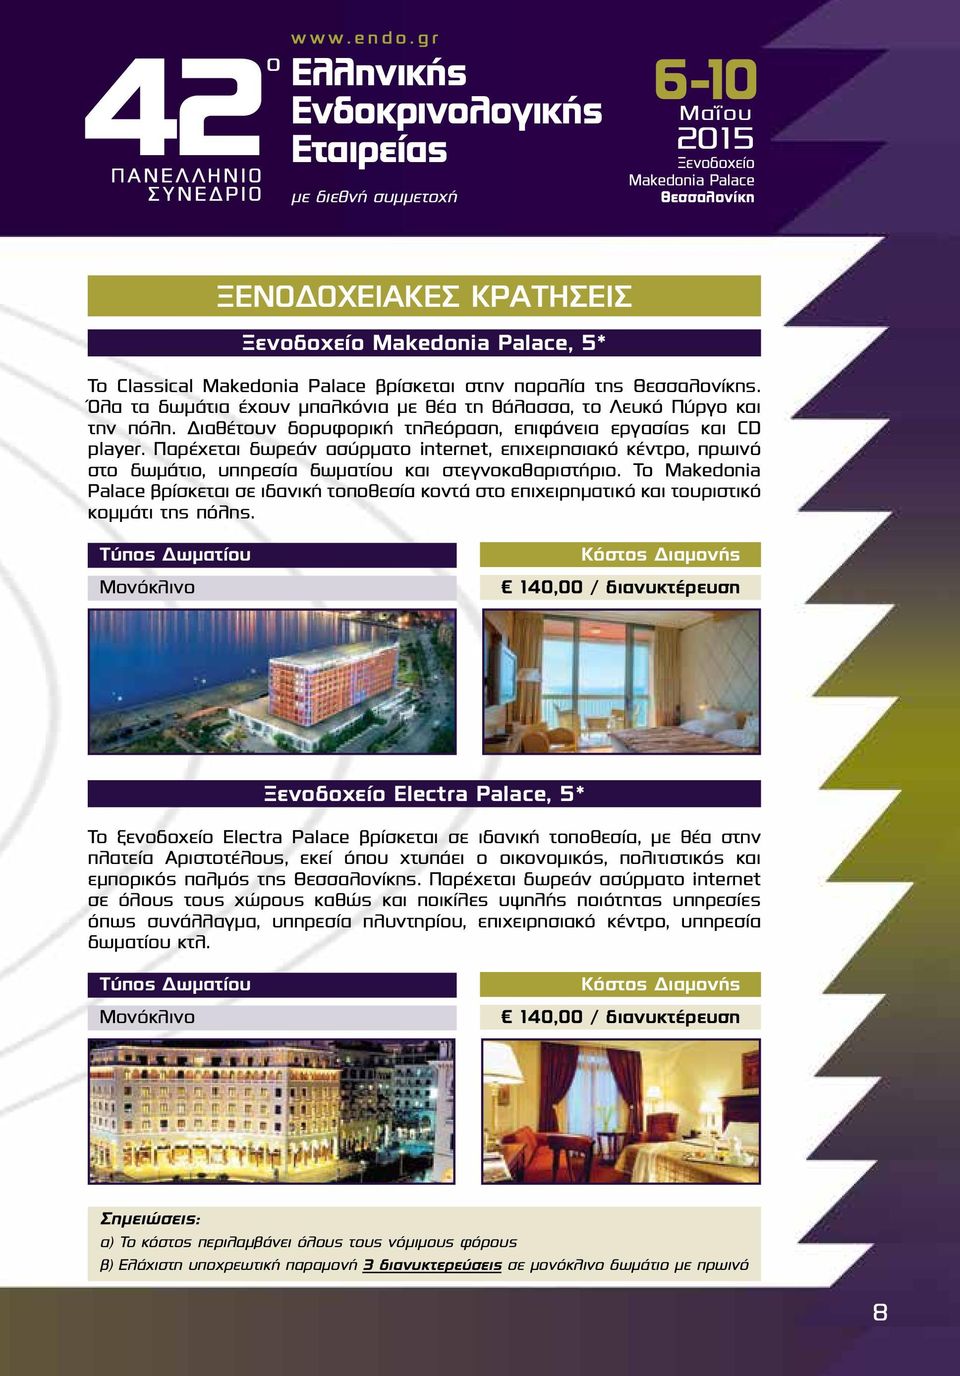 Το Makedonia Palace βρίσκεται σε ιδανική τοποθεσία κοντά στο επιχειρηματικό και τουριστικό κομμάτι της πόλης.